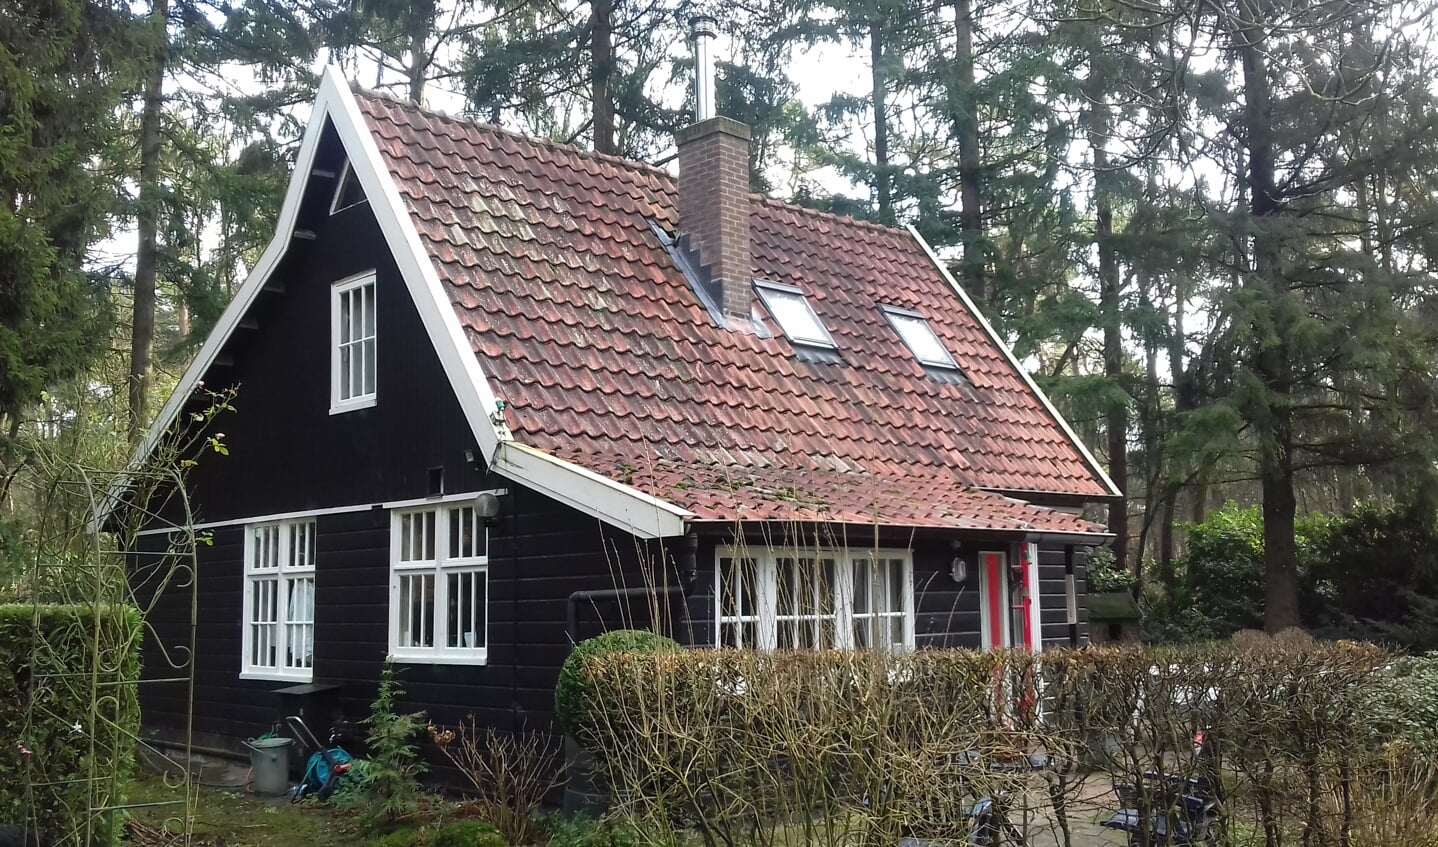 Vakantiehuisje familie Gies in Warnsveld. Foto: gemeente Zutphen